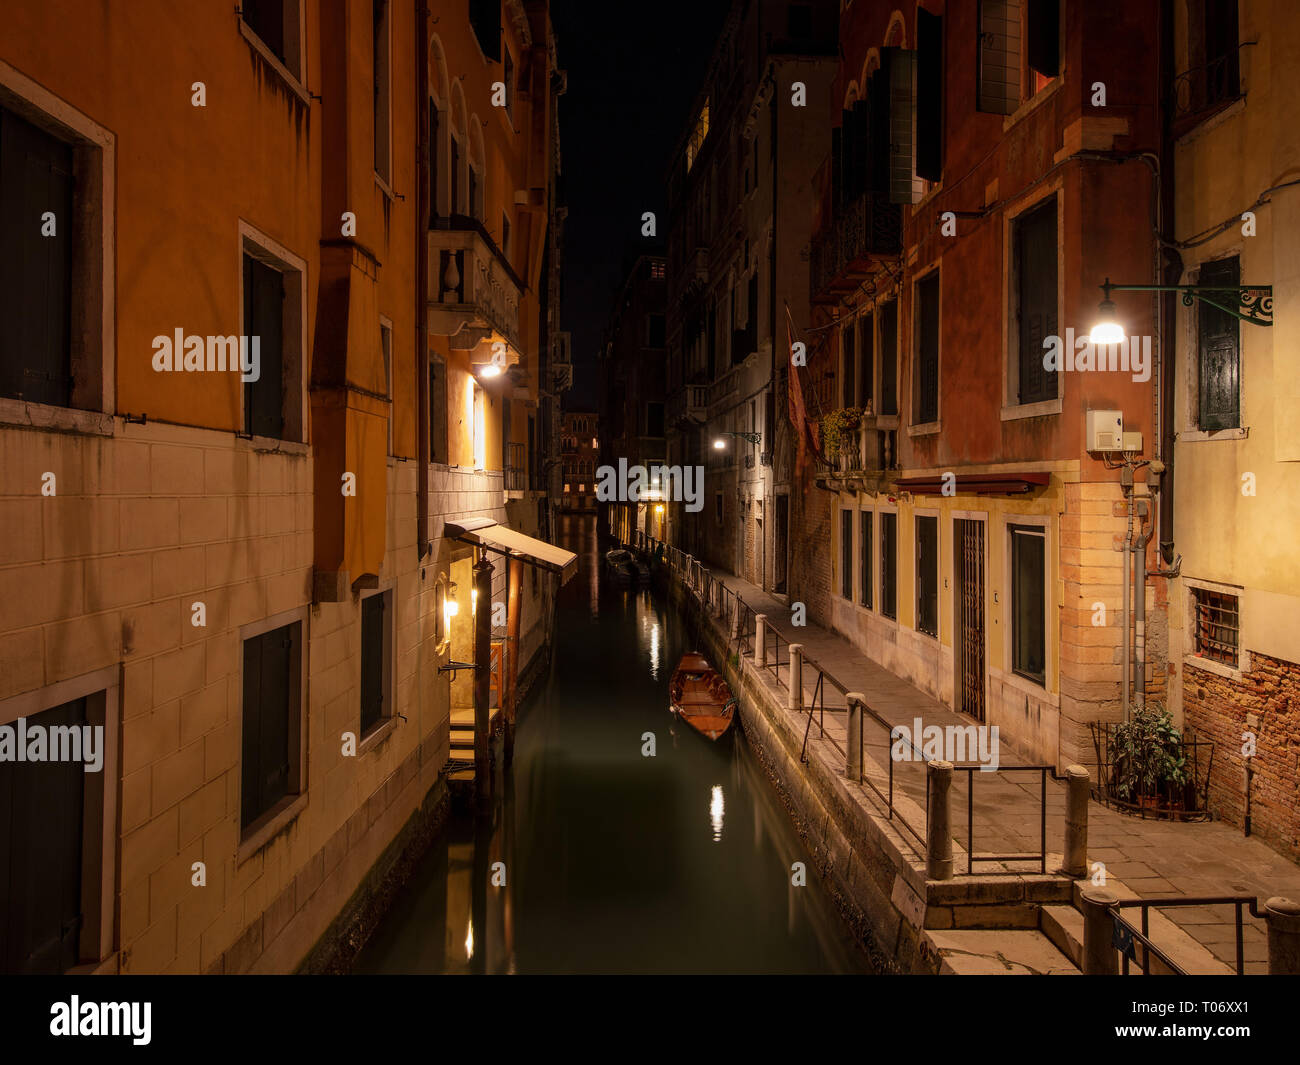 Chiedo round Venezia è uno spettacolo per gli occhi. Questa bellissima città è facile da fotografare. Foto Stock